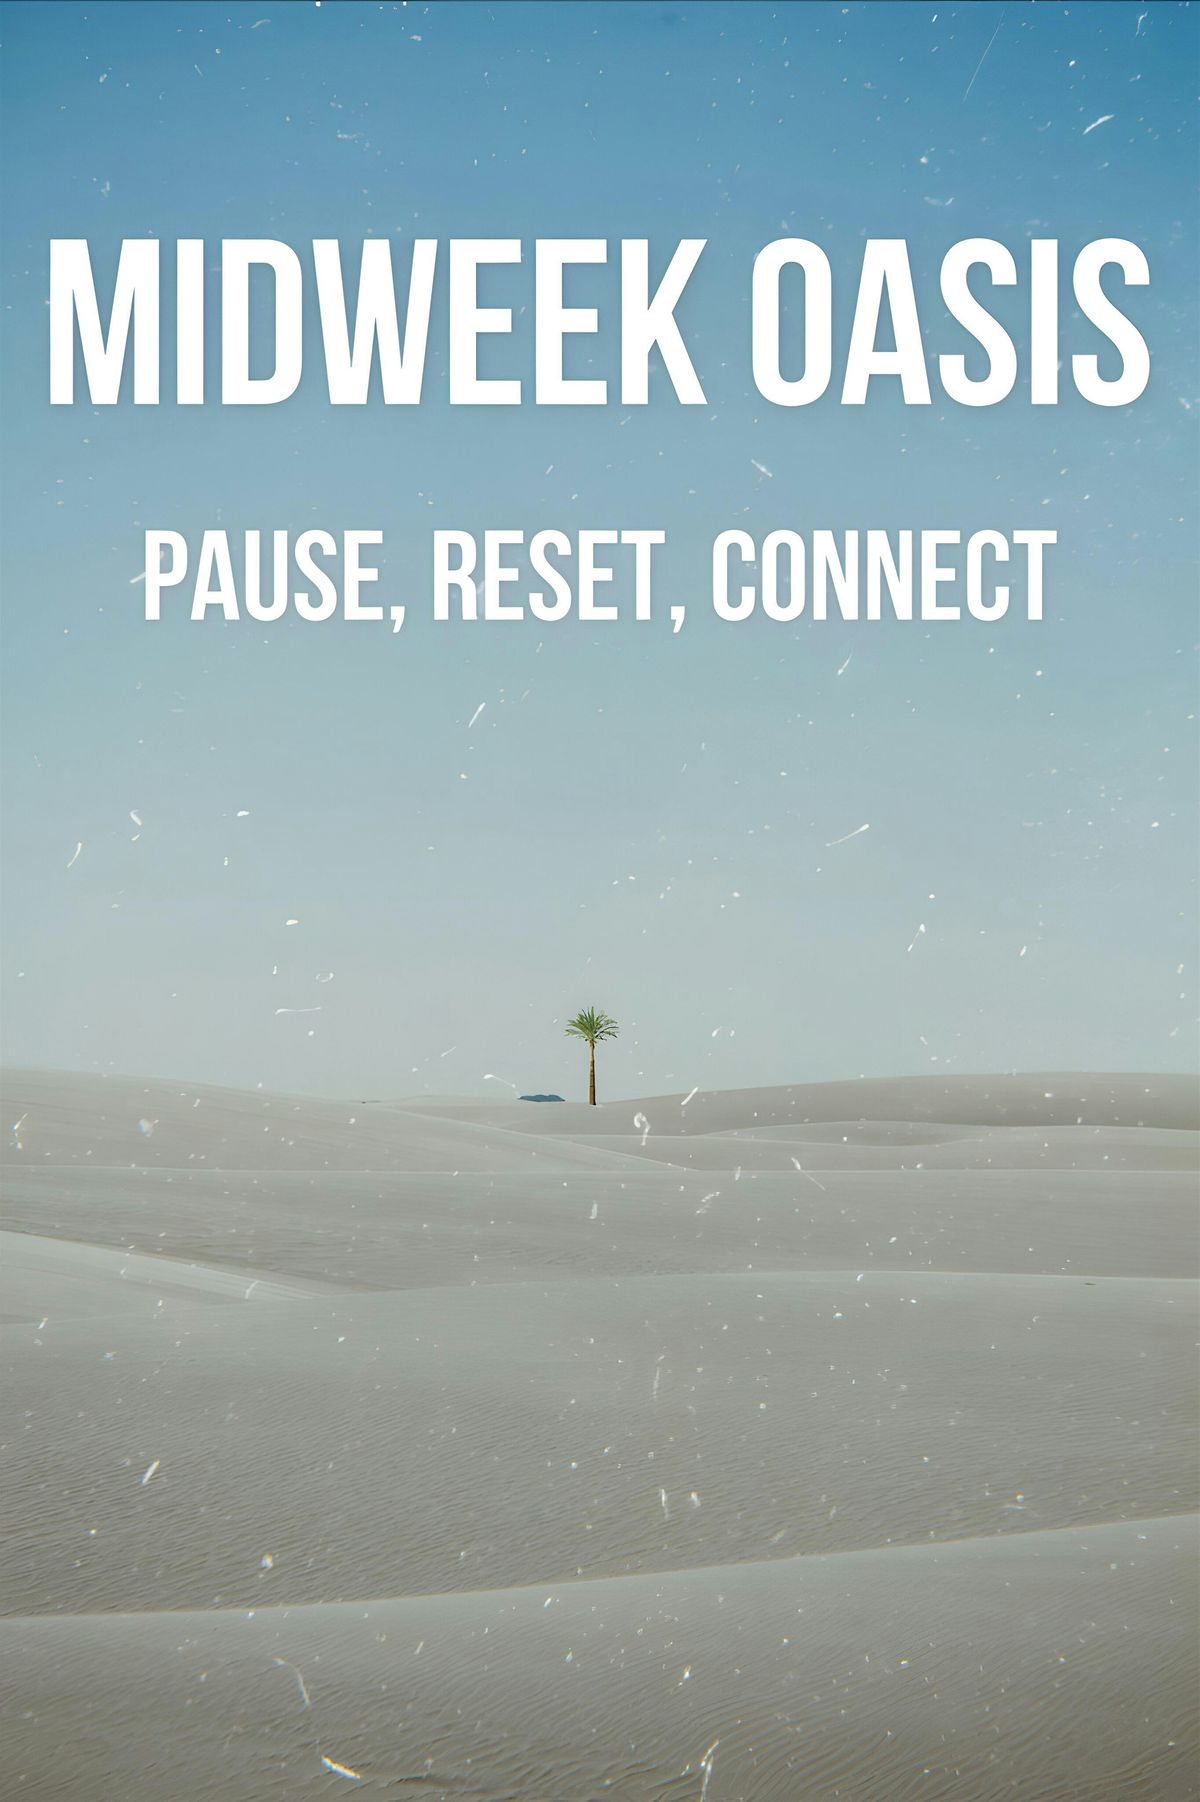 Mid-Week Oasis